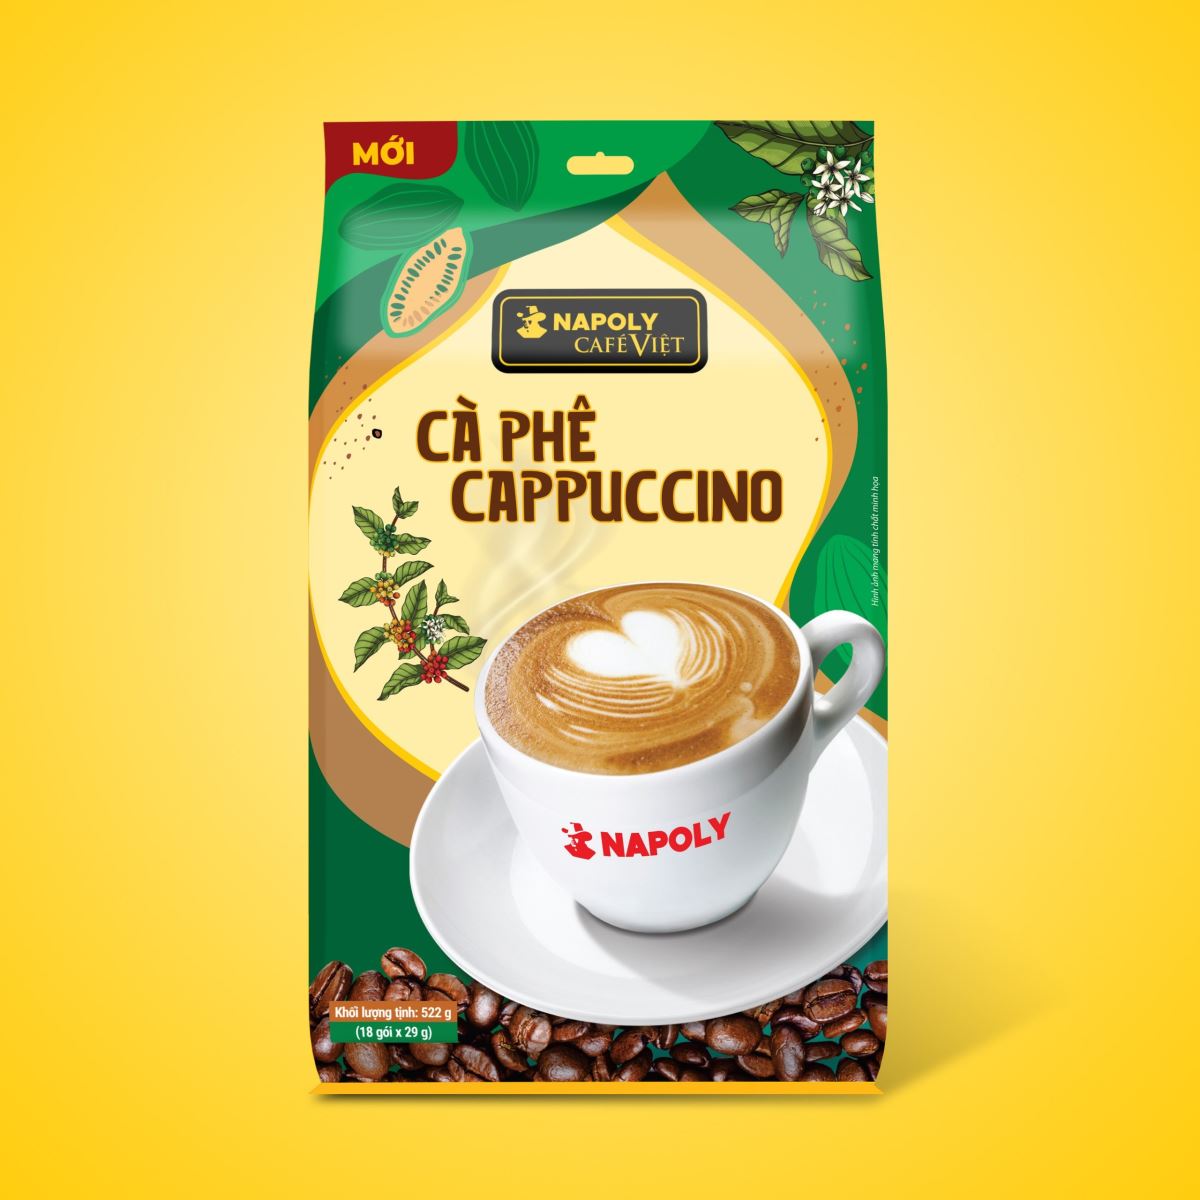     Cà phê Cappuccino-Bịch 18 gói x 29g